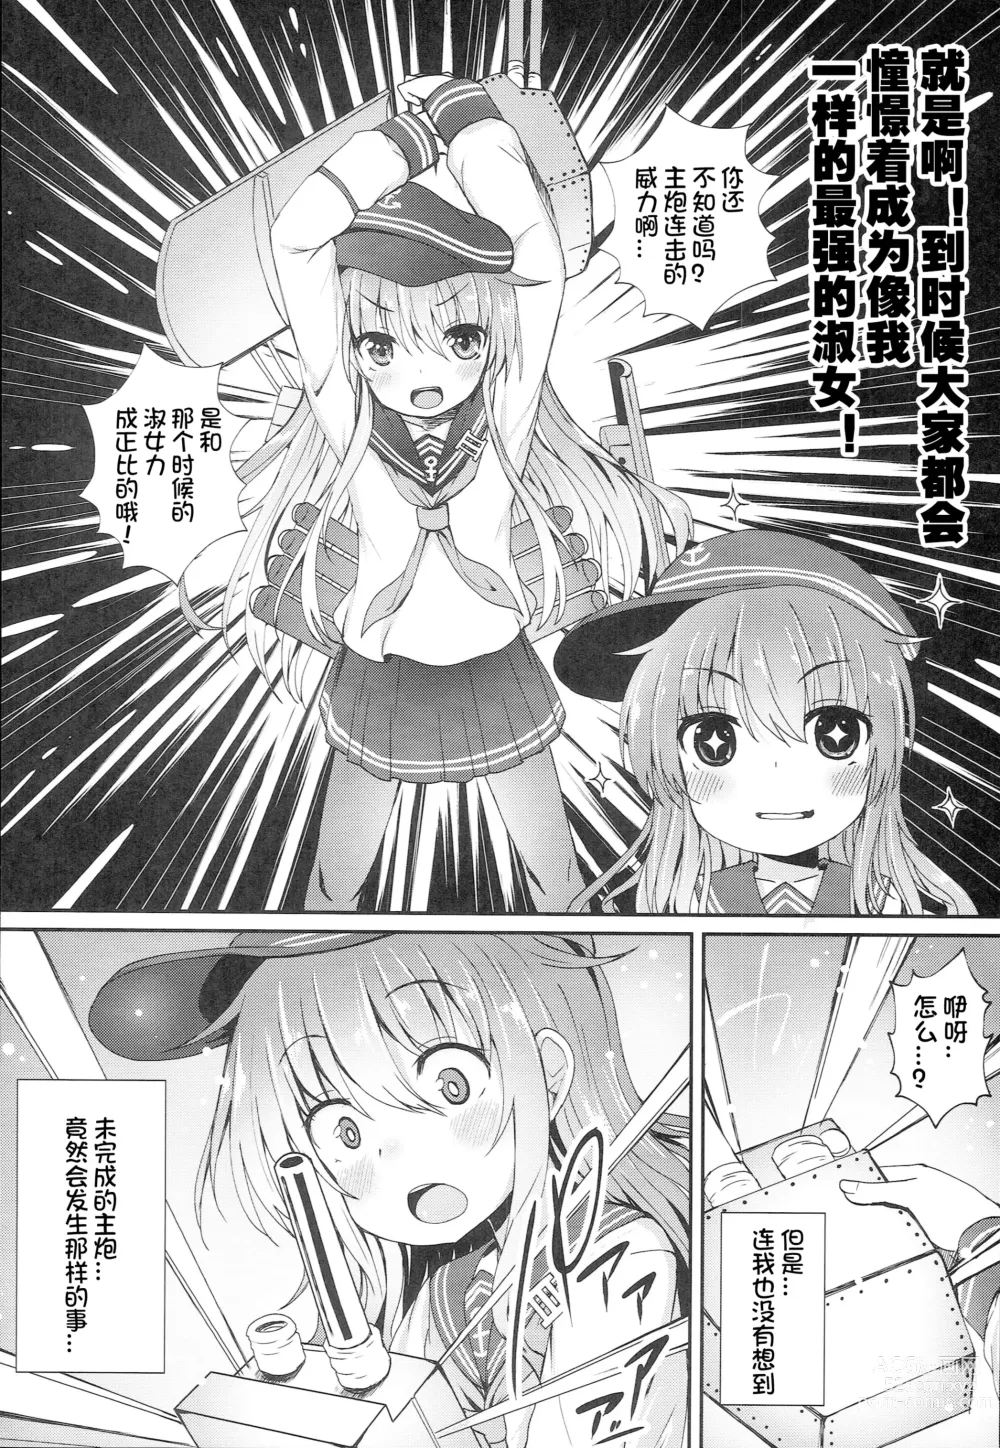 Page 6 of doujinshi Uchi no Akatsuki ga Haemashite.